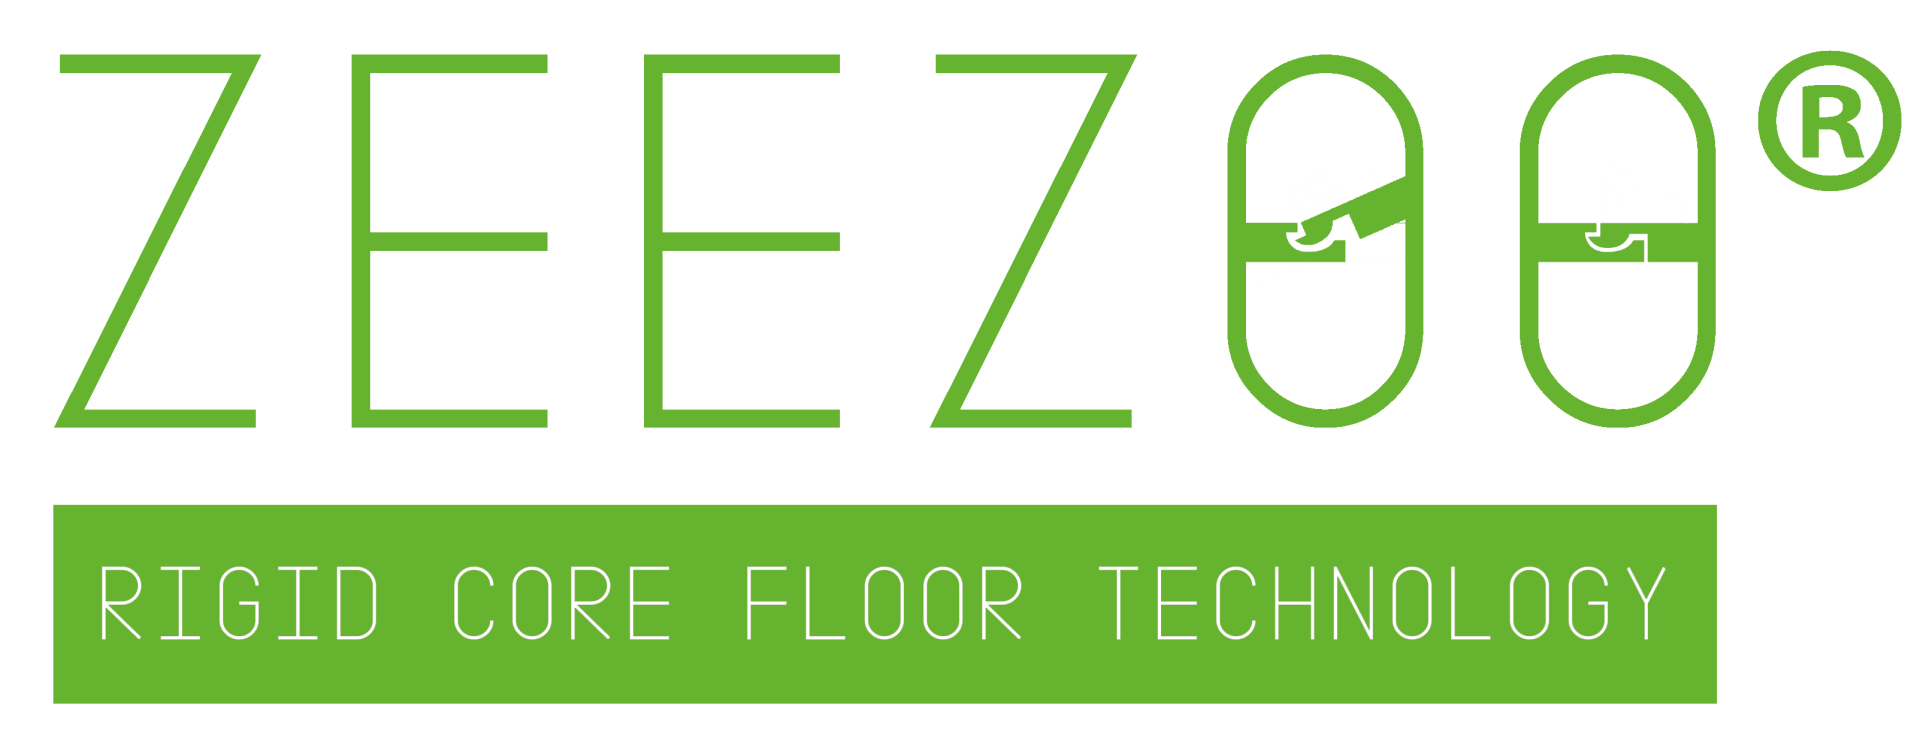 Zeezoo rigid core vinyl flooring Click System colour Crafted Oak - Image 4 of 4